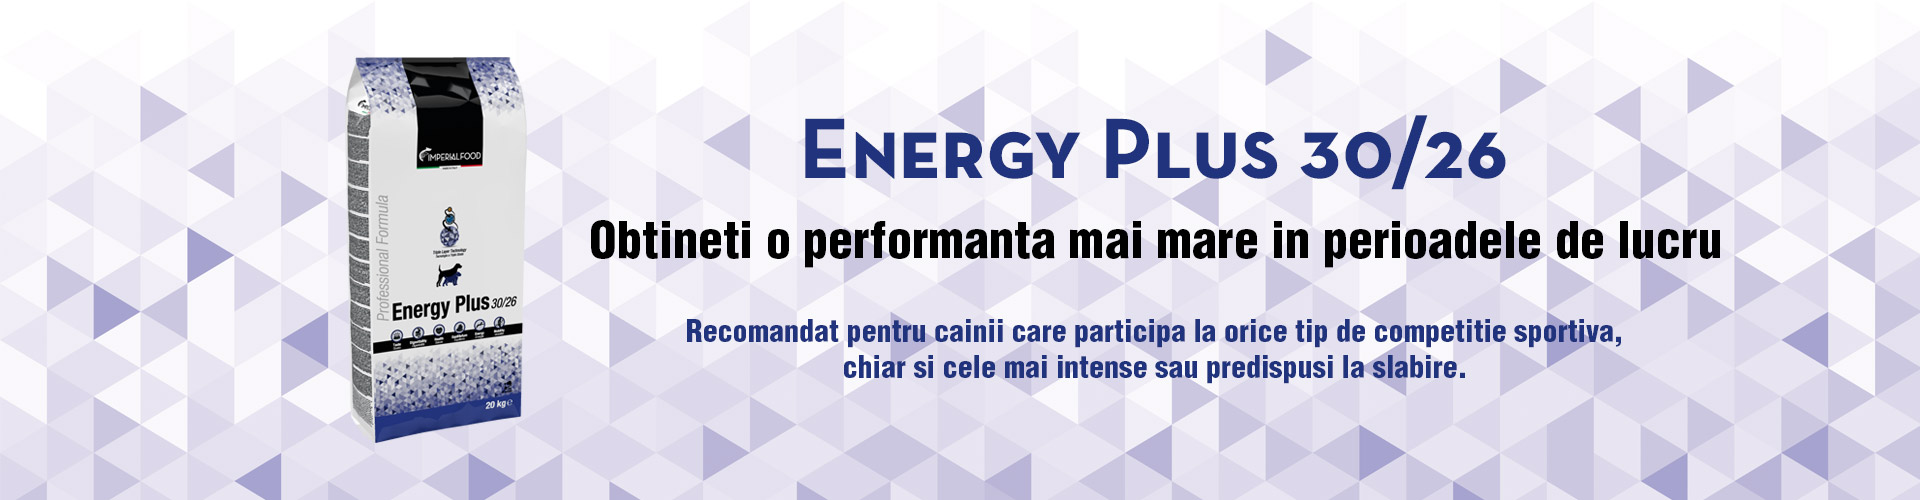 Energy Plus 30/26